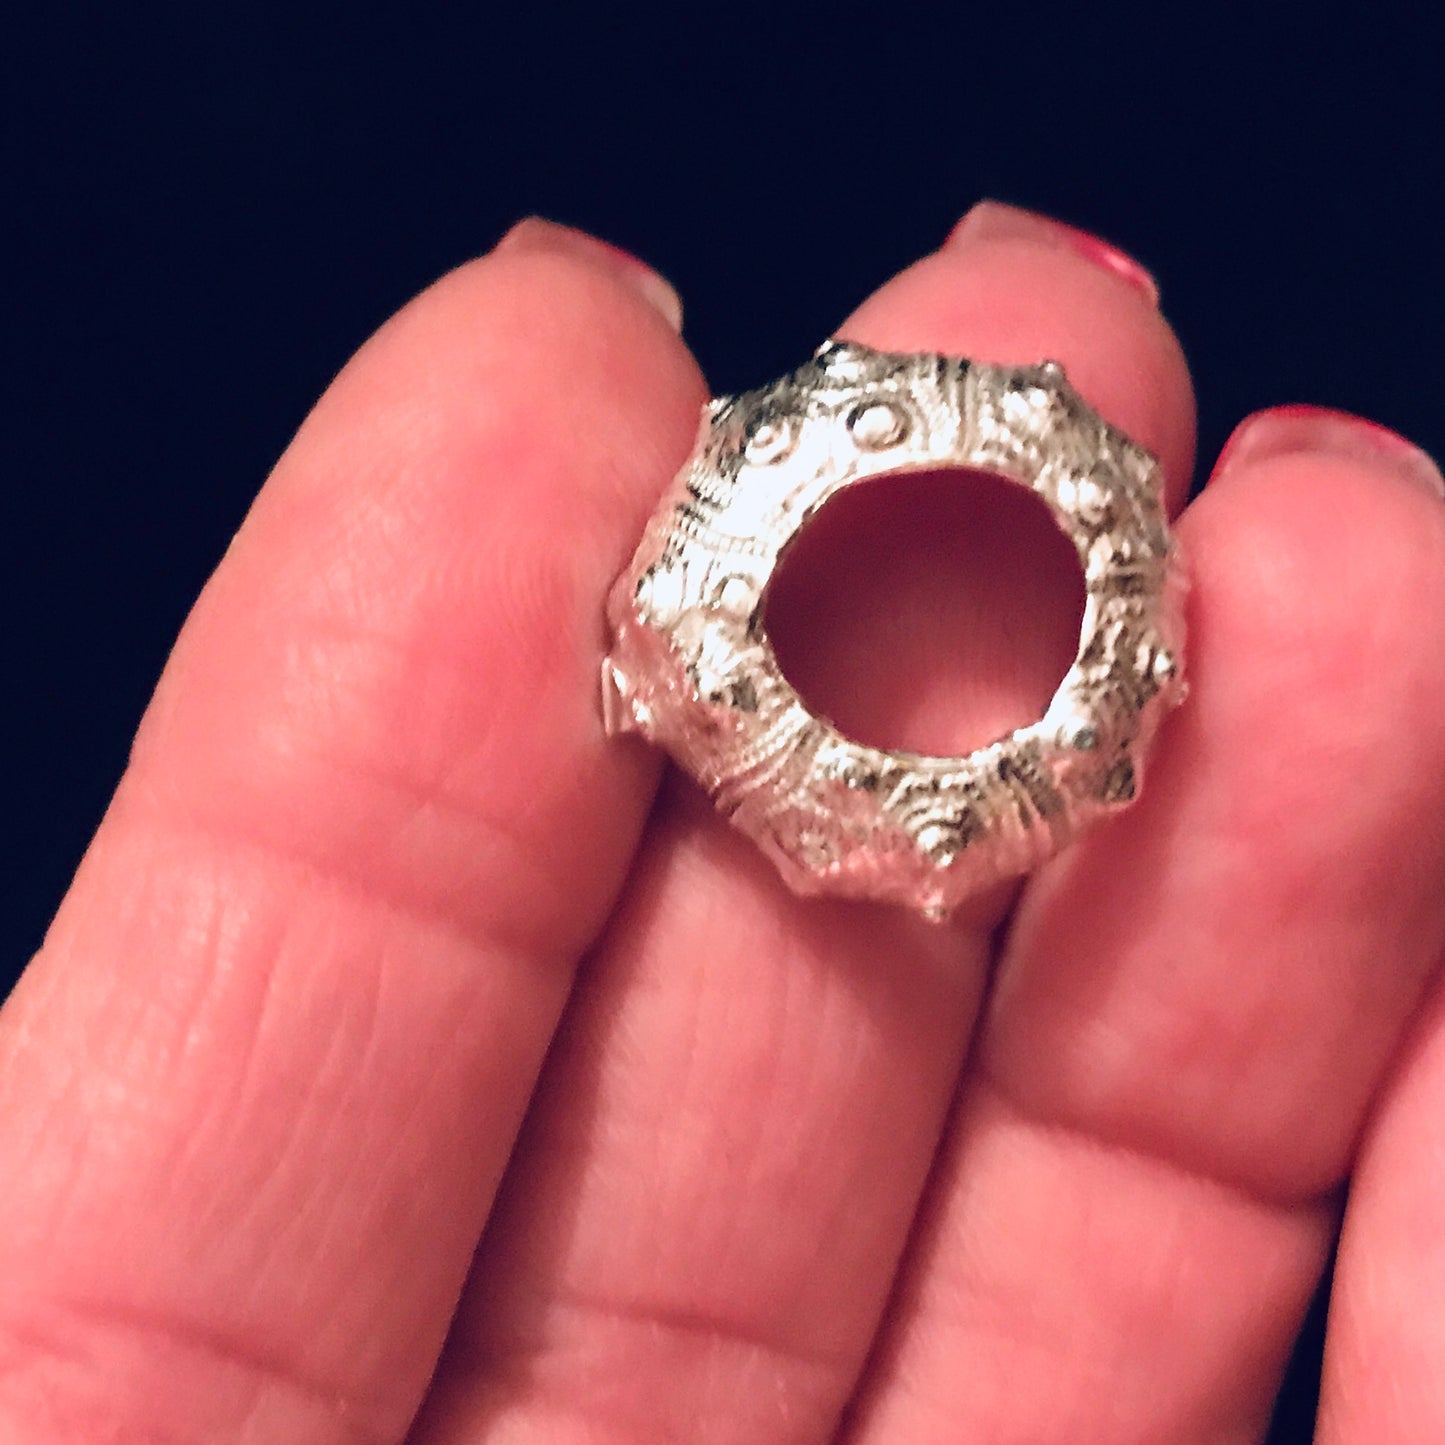 Cast Sea Urchin Half for Jewelry Design